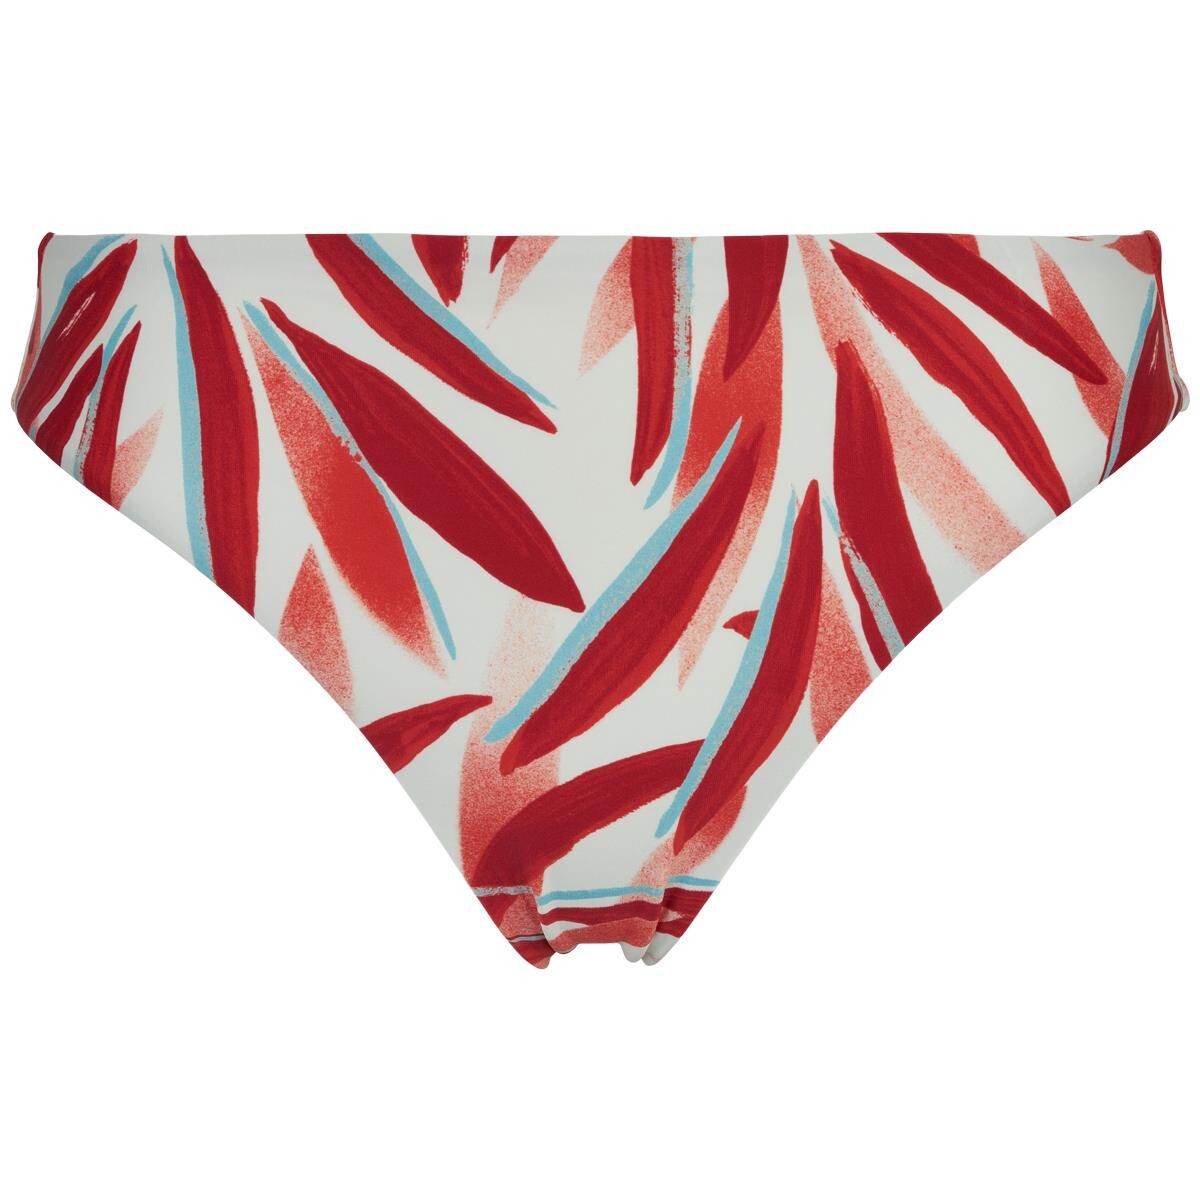 Femilet Bikini Trusse Fs-fg, Farve: Rød Leaves, Størrelse: 36, Dame